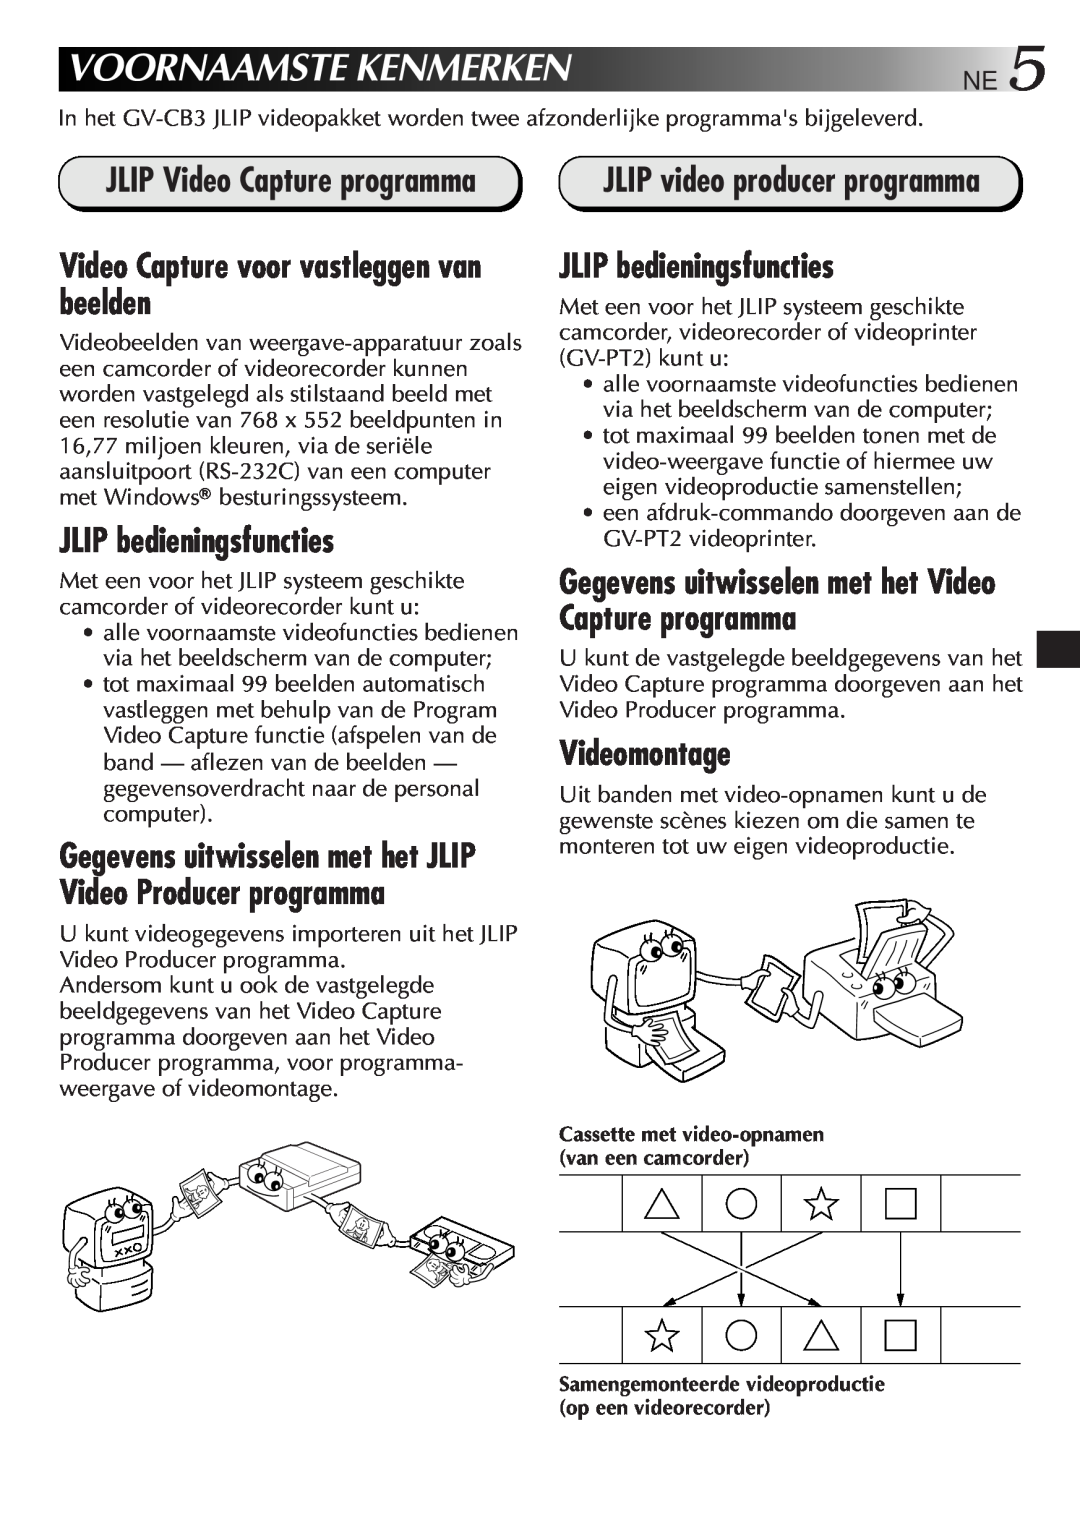 JVC GV-CB3E manual Voornaamste Kenmerken, Video Capture voor vastleggen van beelden, JLIP bedieningsfuncties, Videomontage 